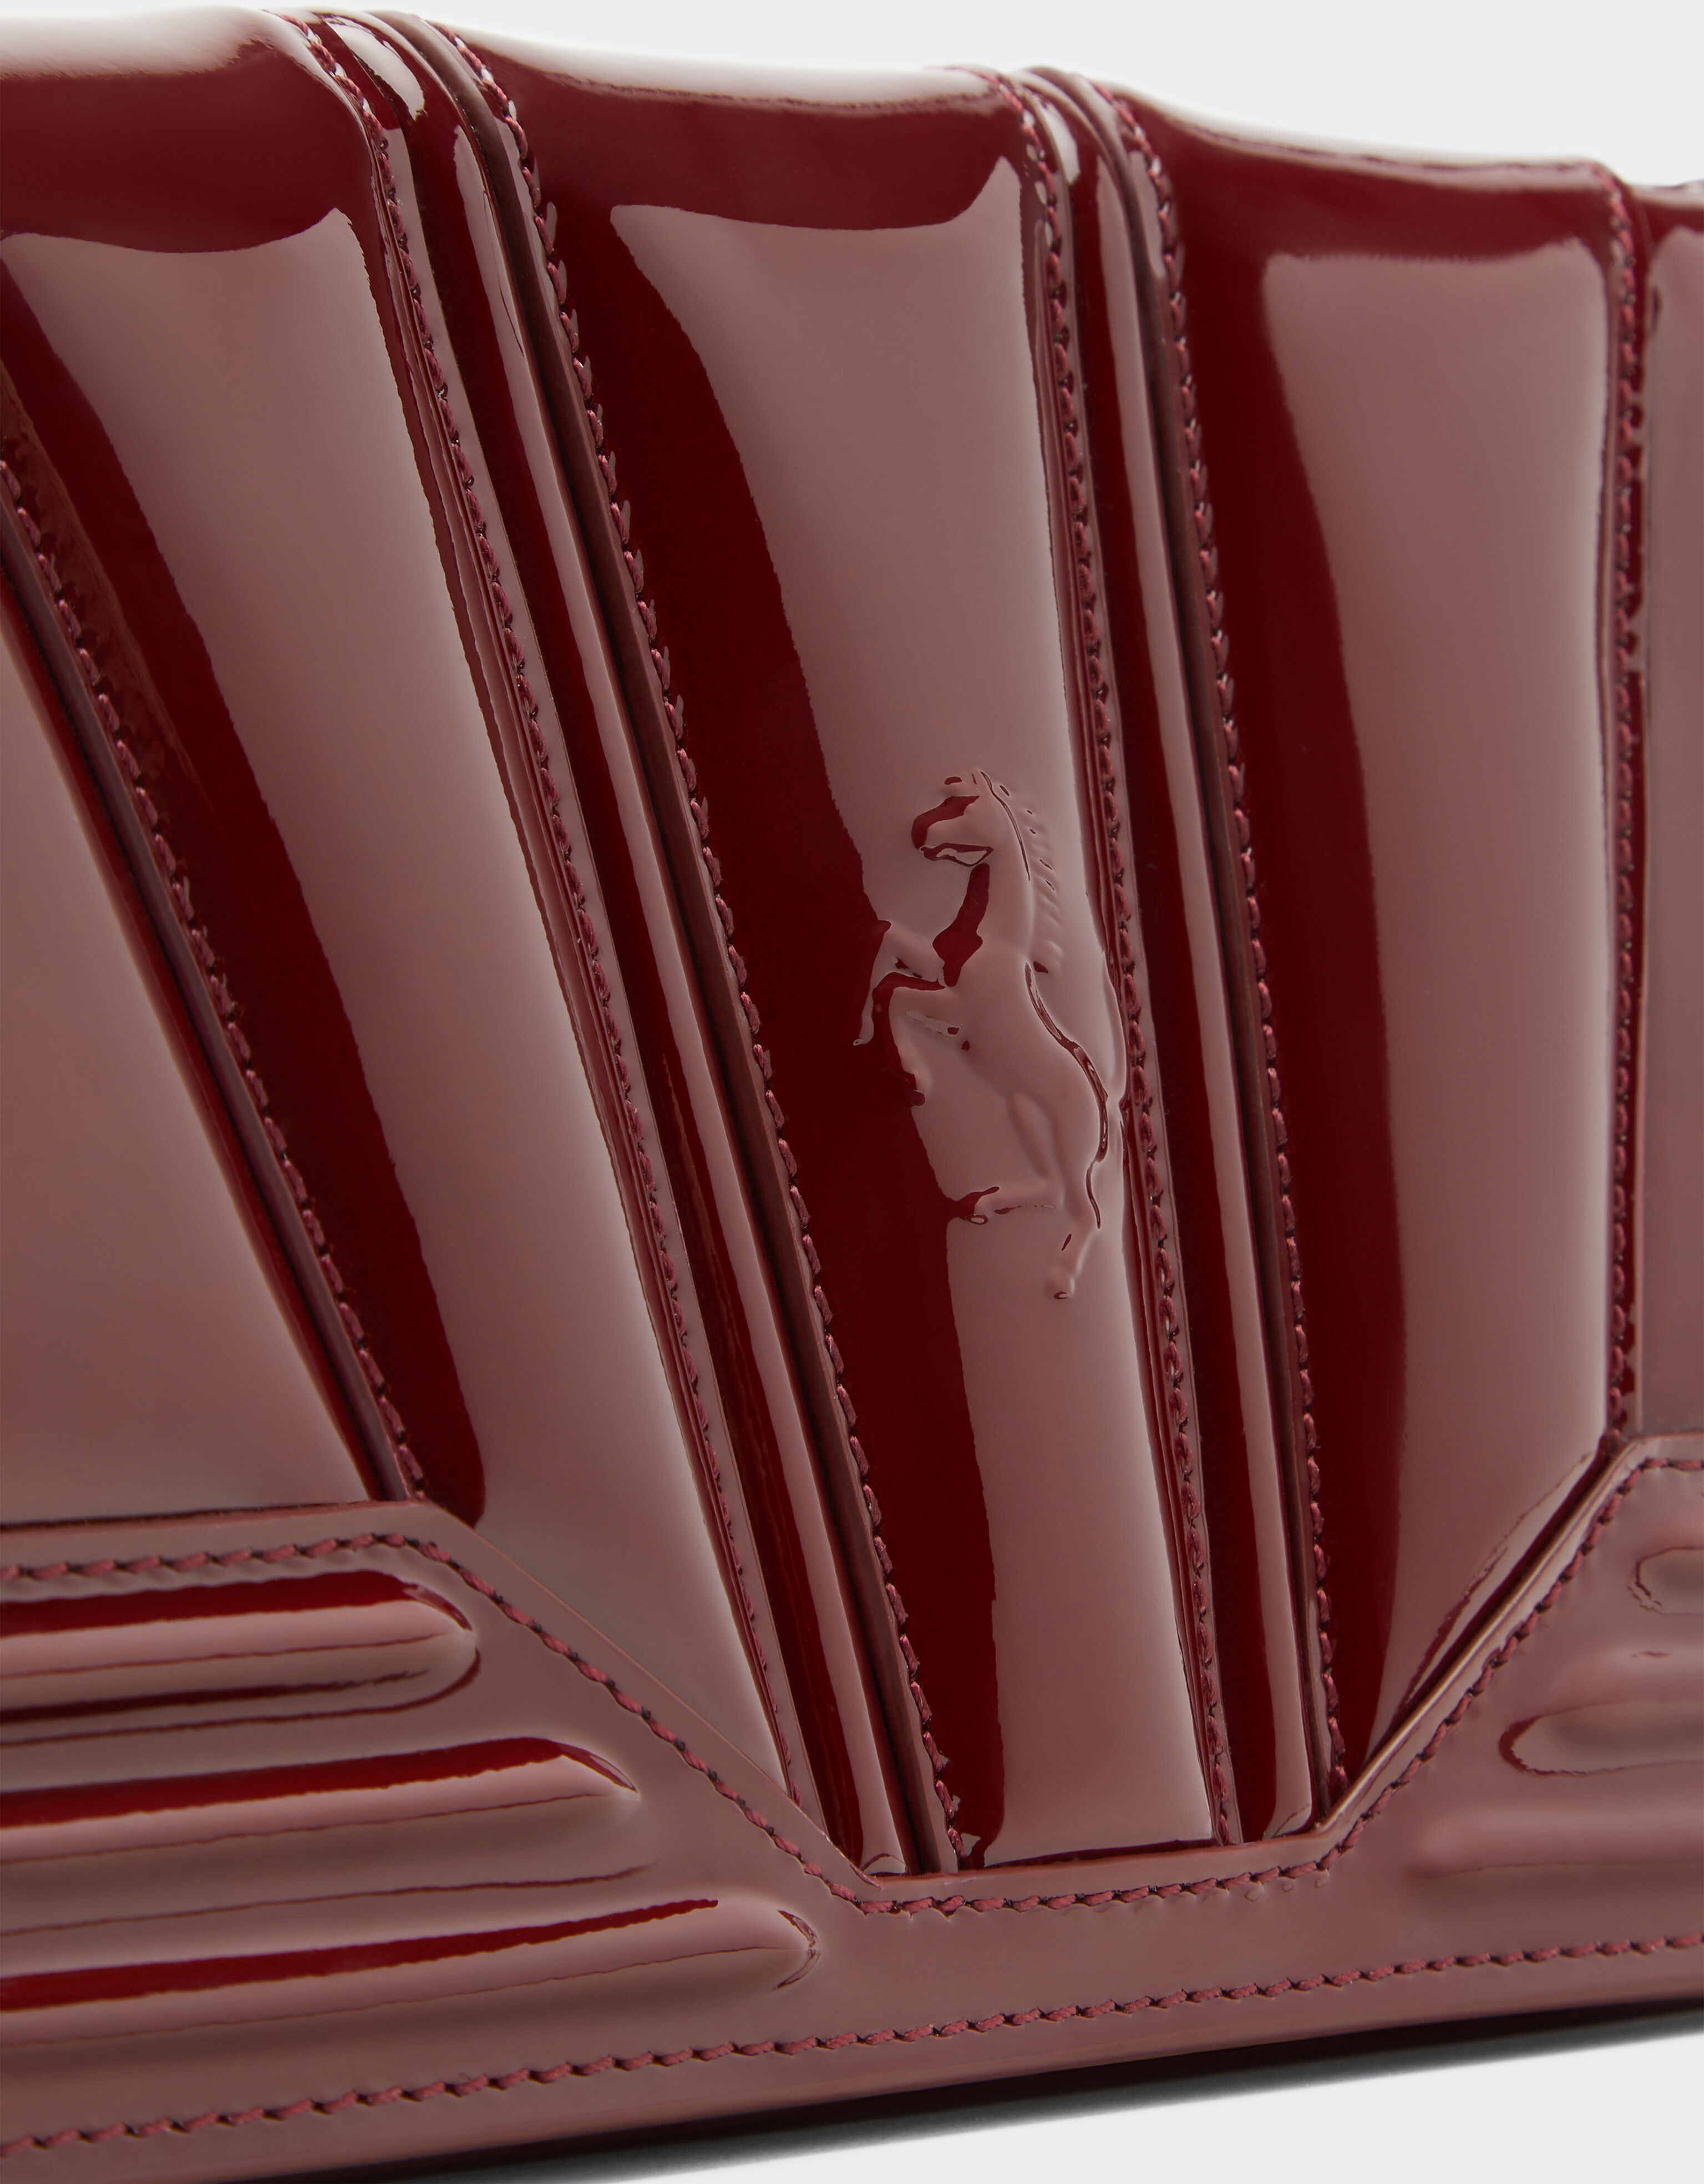 Ferrari 法拉利 GT Bag 漆皮链饰钱包 酒红色 20331f